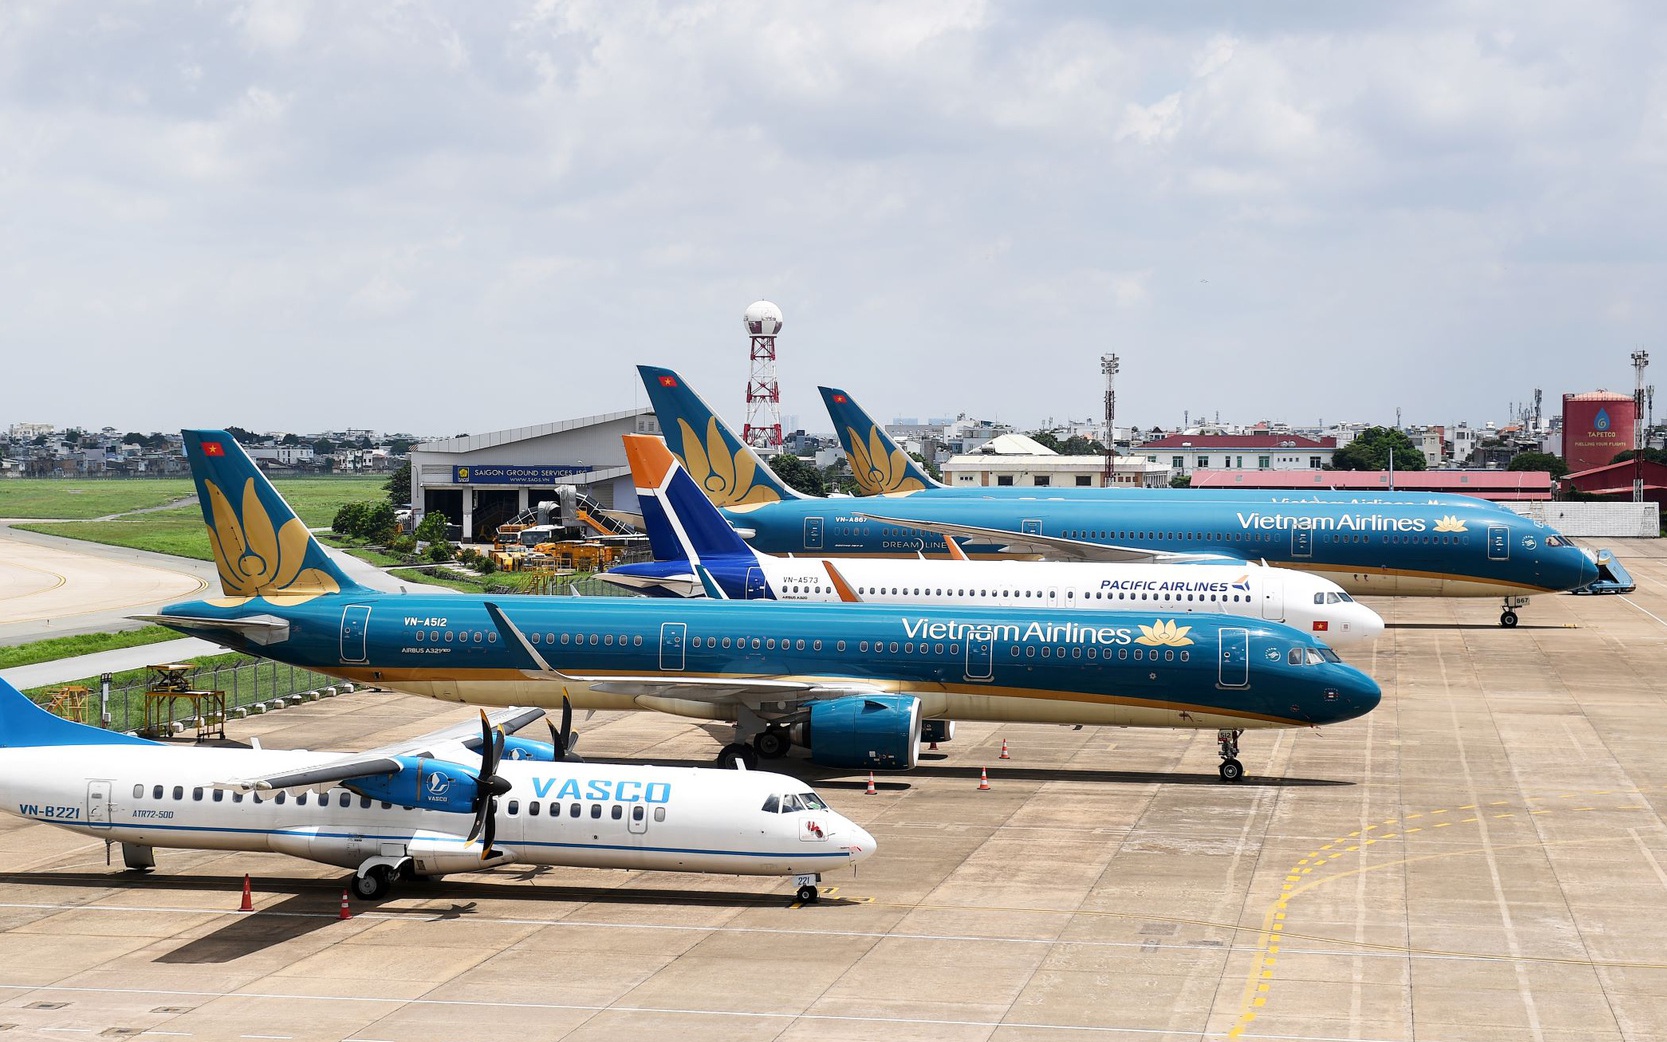 Nguy cơ huỷ niêm yết, Vietnam Airlines muốn thoái vốn tại Pacific Airlines để giảm lỗ 6.000 tỷ đồng